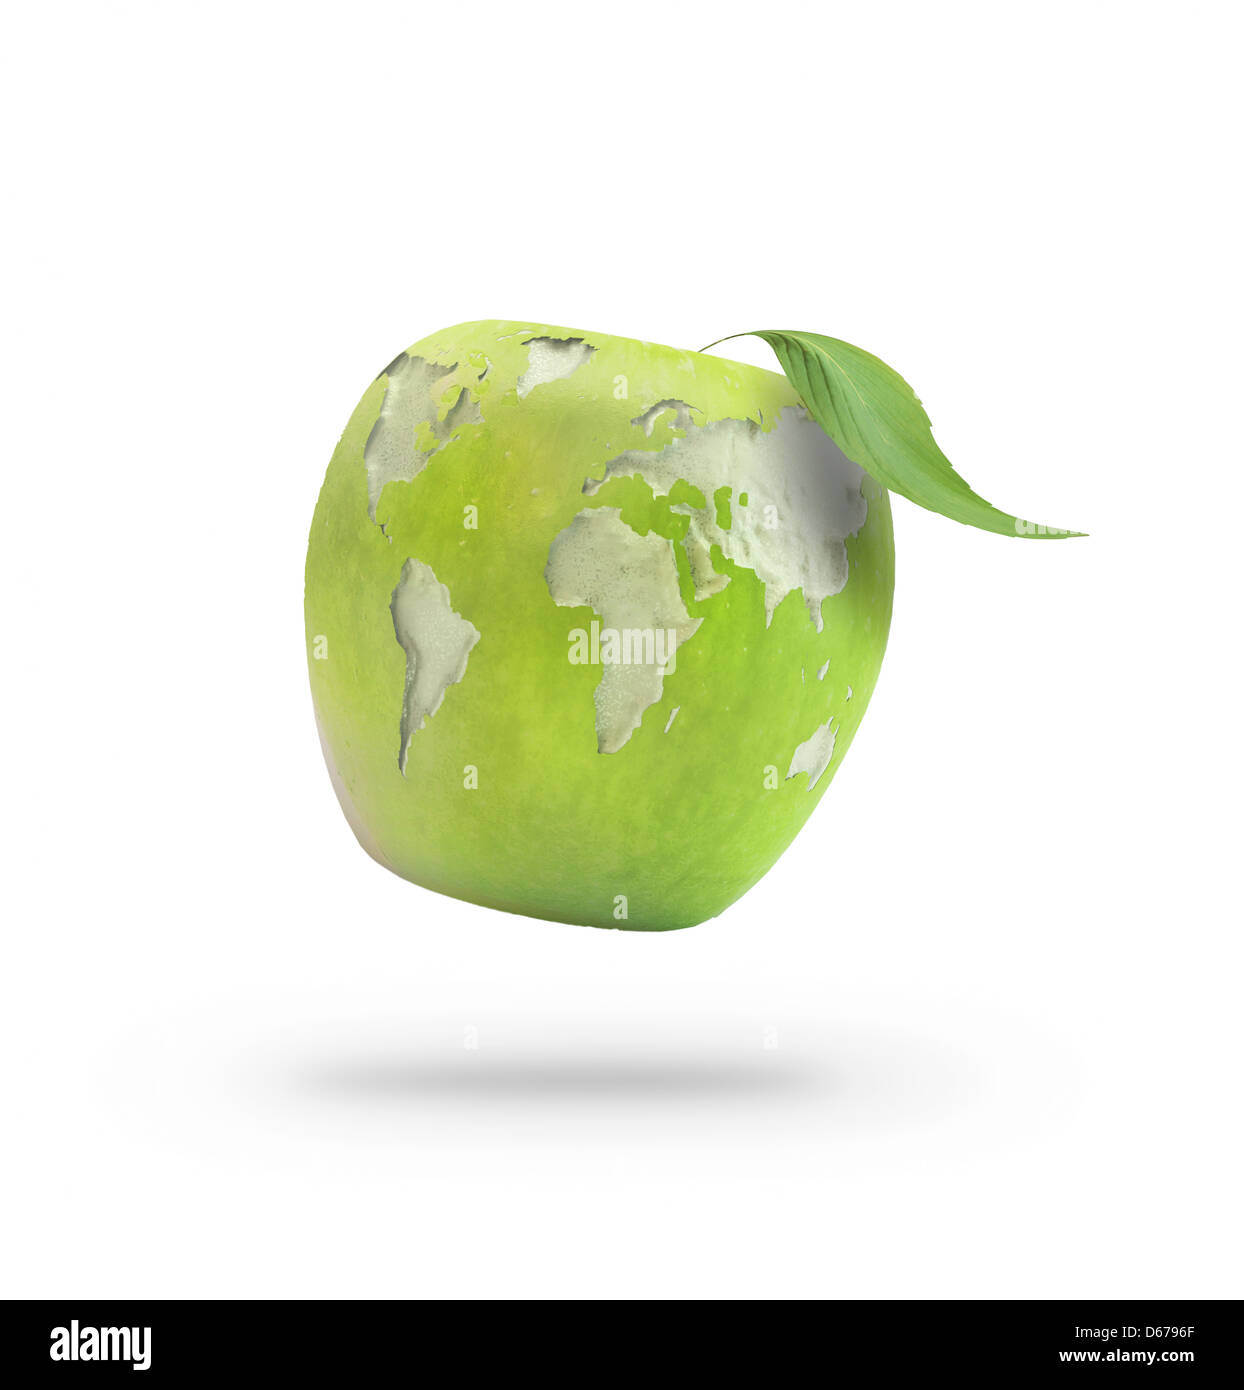 Apple pelées formant la carte du monde Banque D'Images